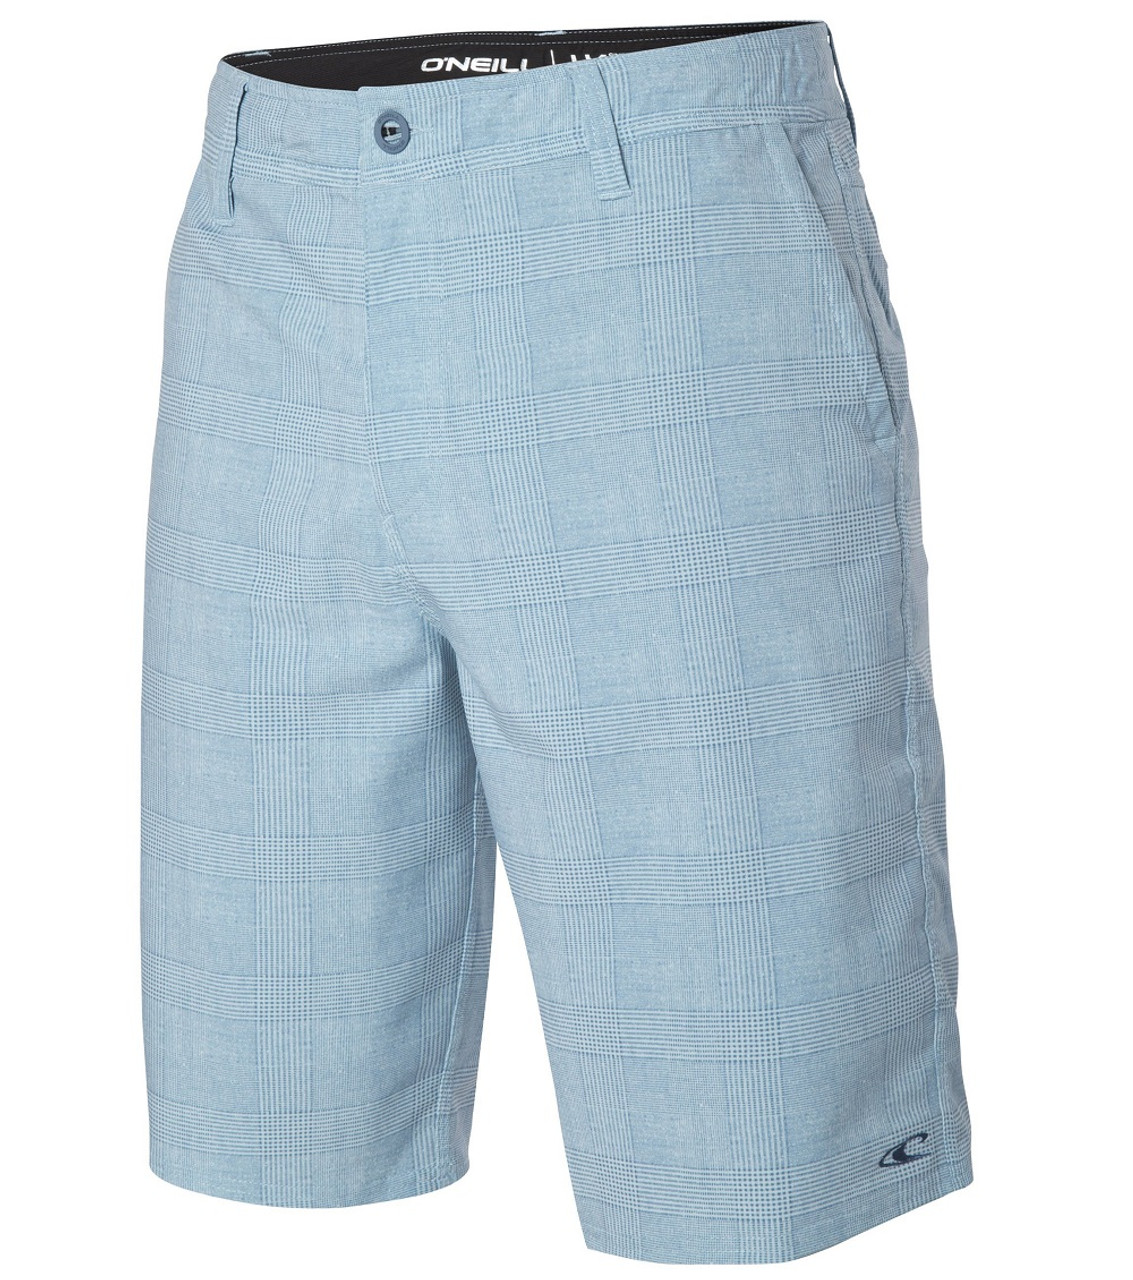 Oneill Insider Hybrid Shorts Mens Light Blue